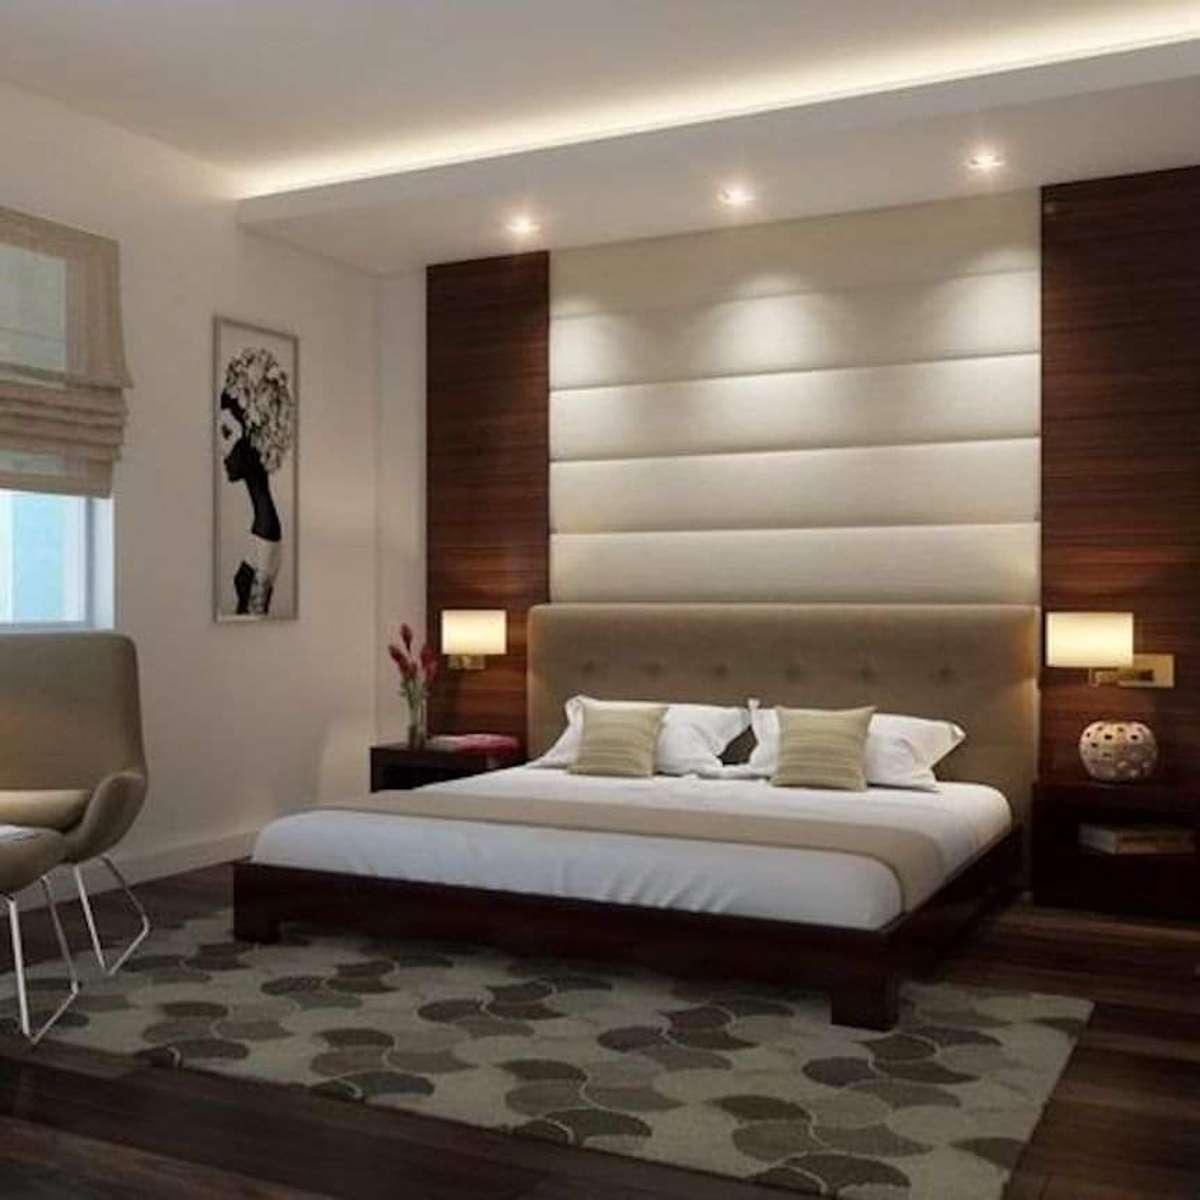 Furniture, Lighting, Bedroom, Storage Designs by Carpenter hindi bala carpenter, Kannur | Kolo